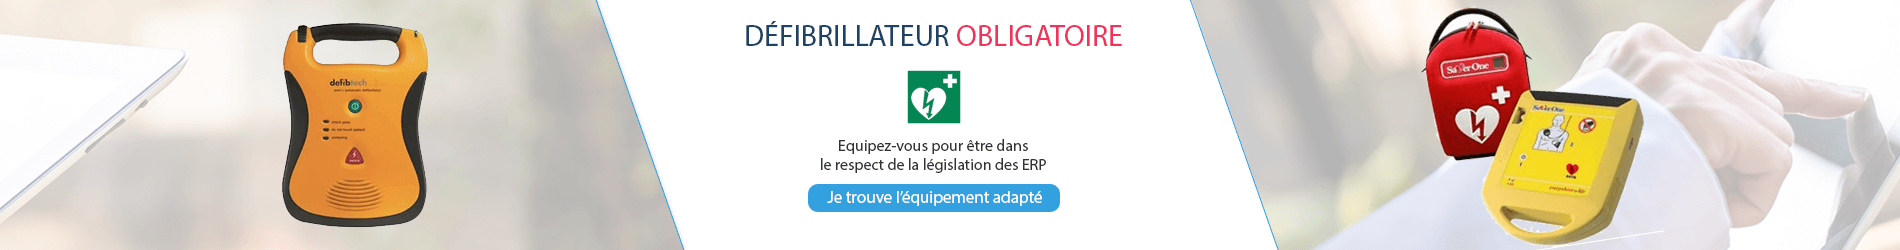 Bannière défibrillateurs obligatoires - législation ERP